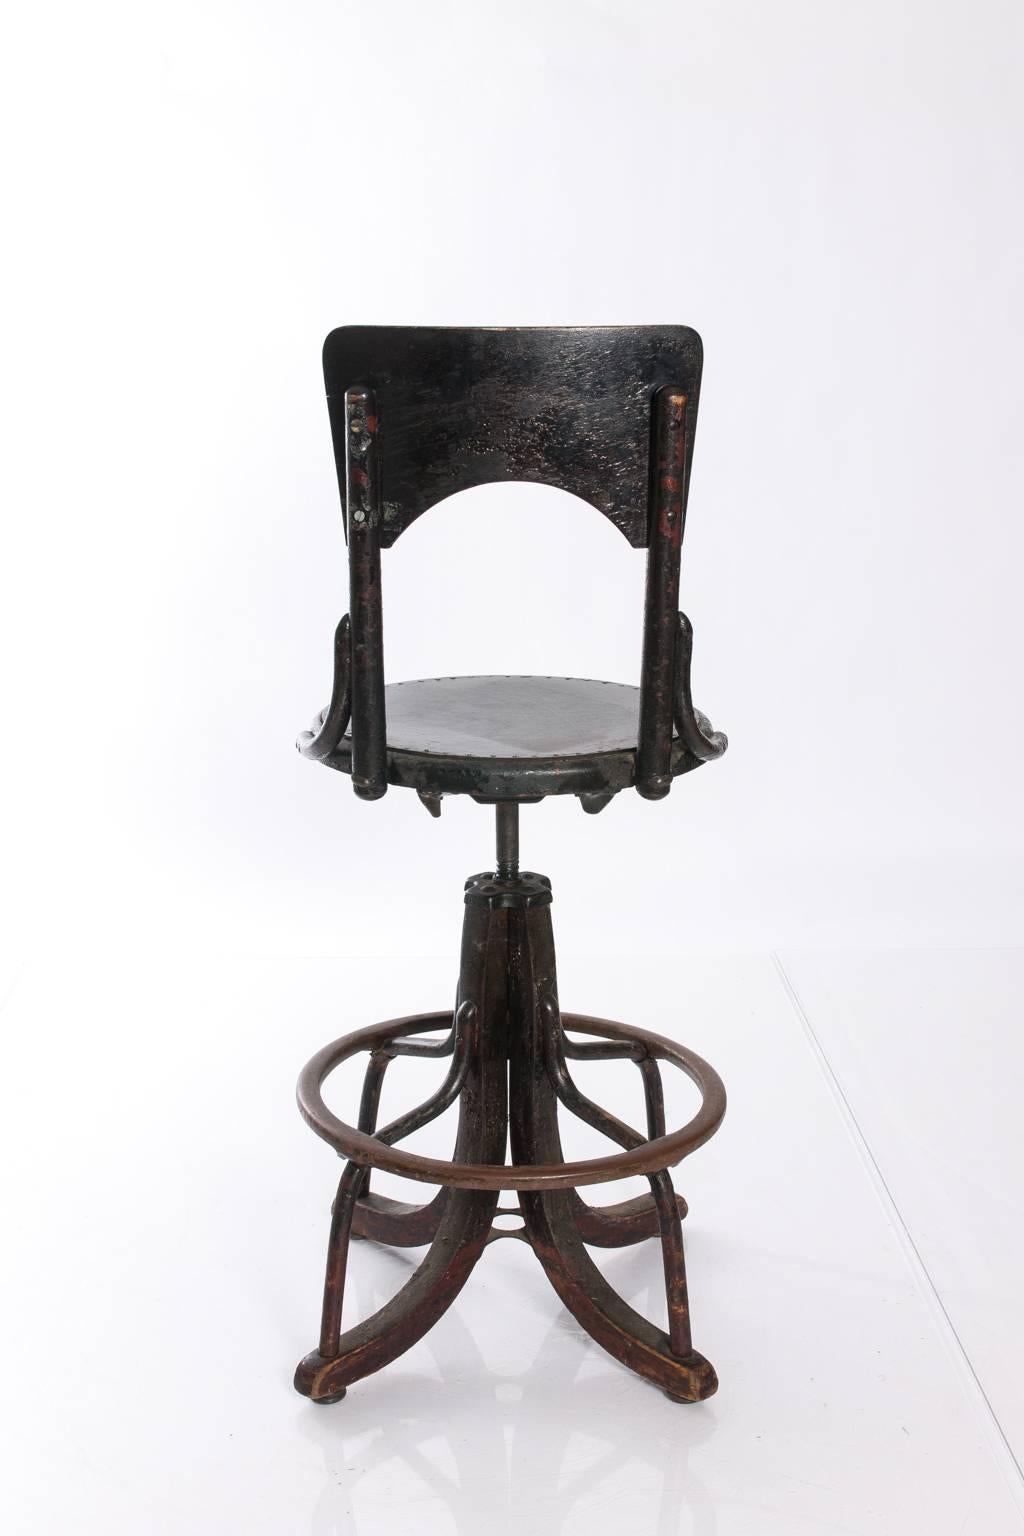 Tall adjustable Industrial stool.